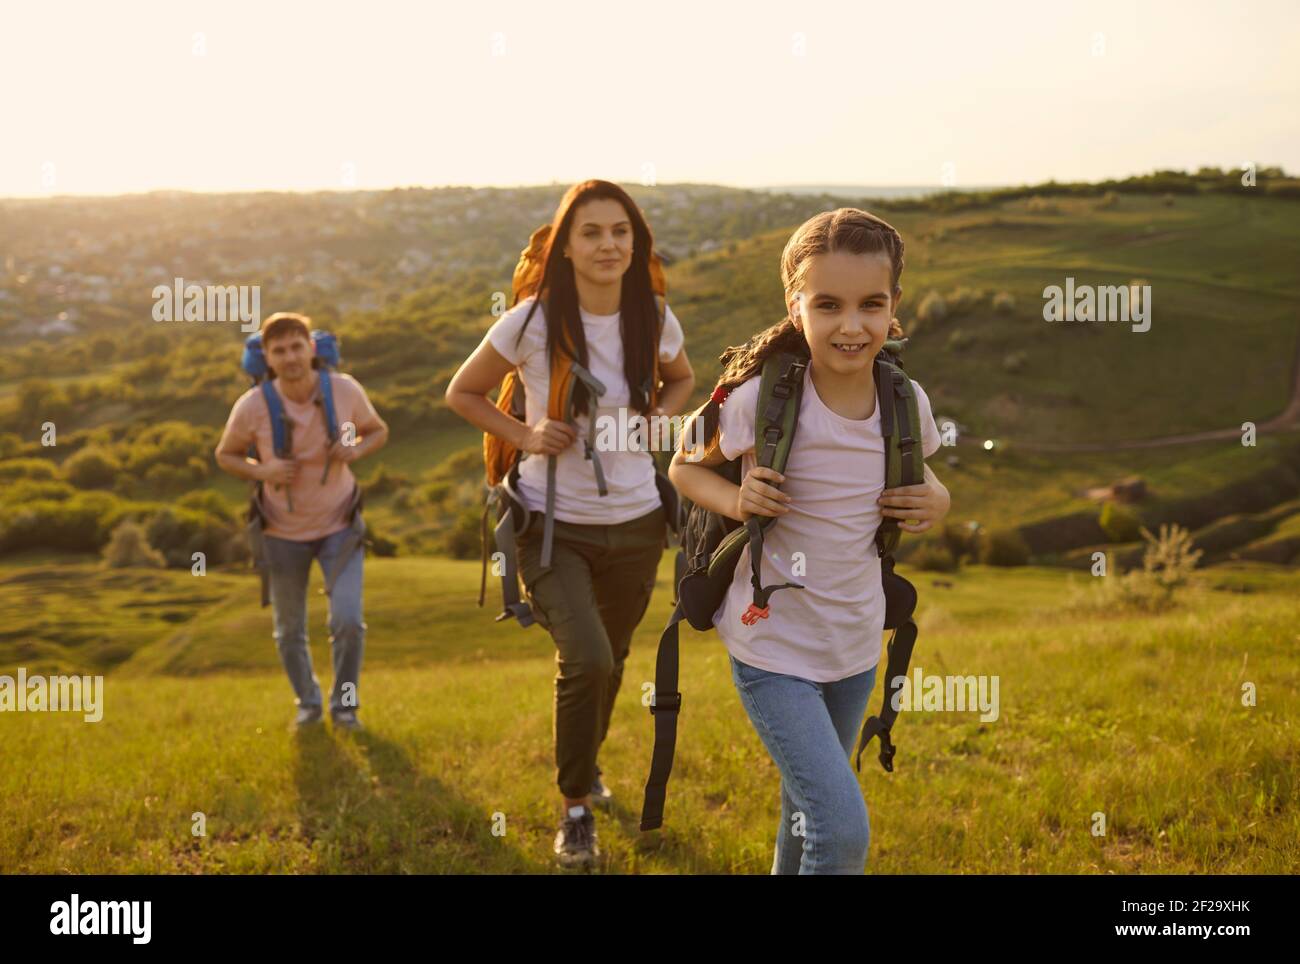 Familie mit Rucksäcken auf touristische Reise in den Bergen. Nettes Mädchen mit Eltern Camping in der Wildnis während der Sommerferien Stockfoto